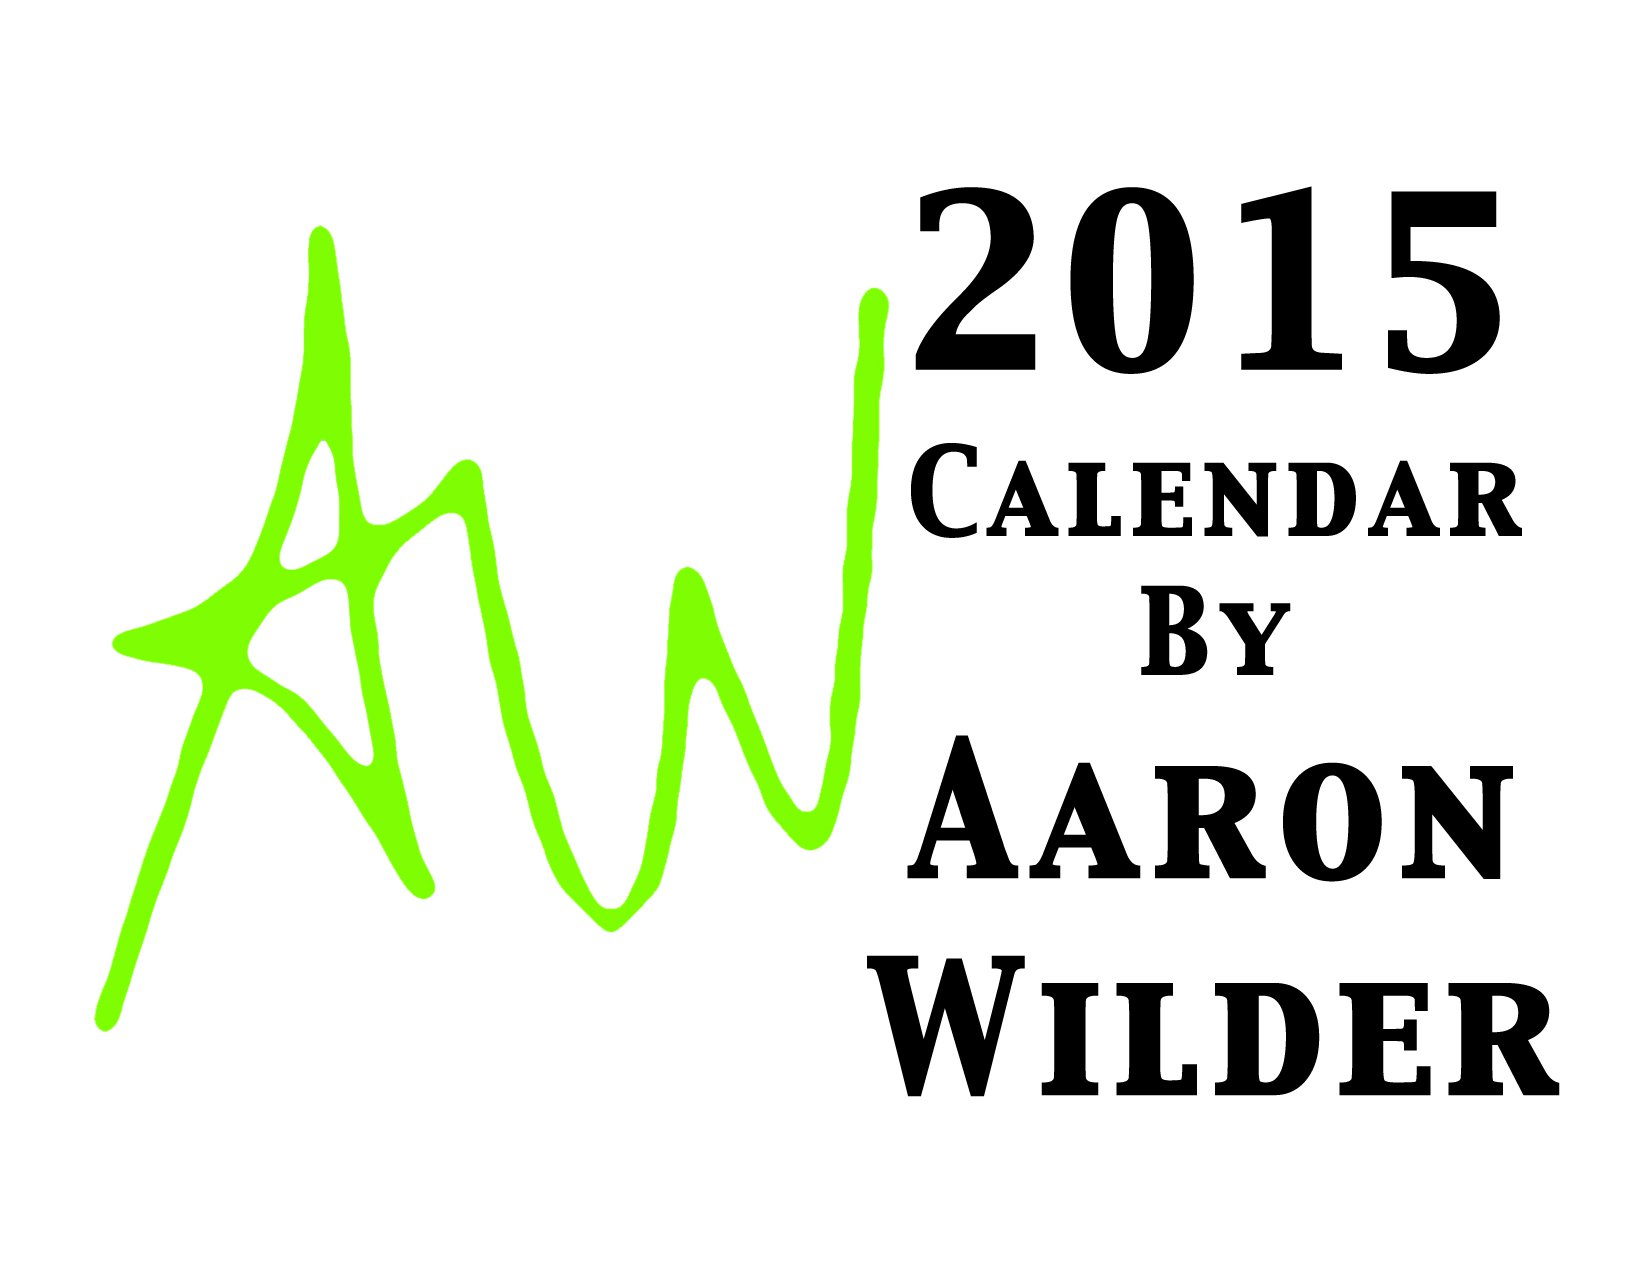 Aaron Wilder's 2015 Calendar